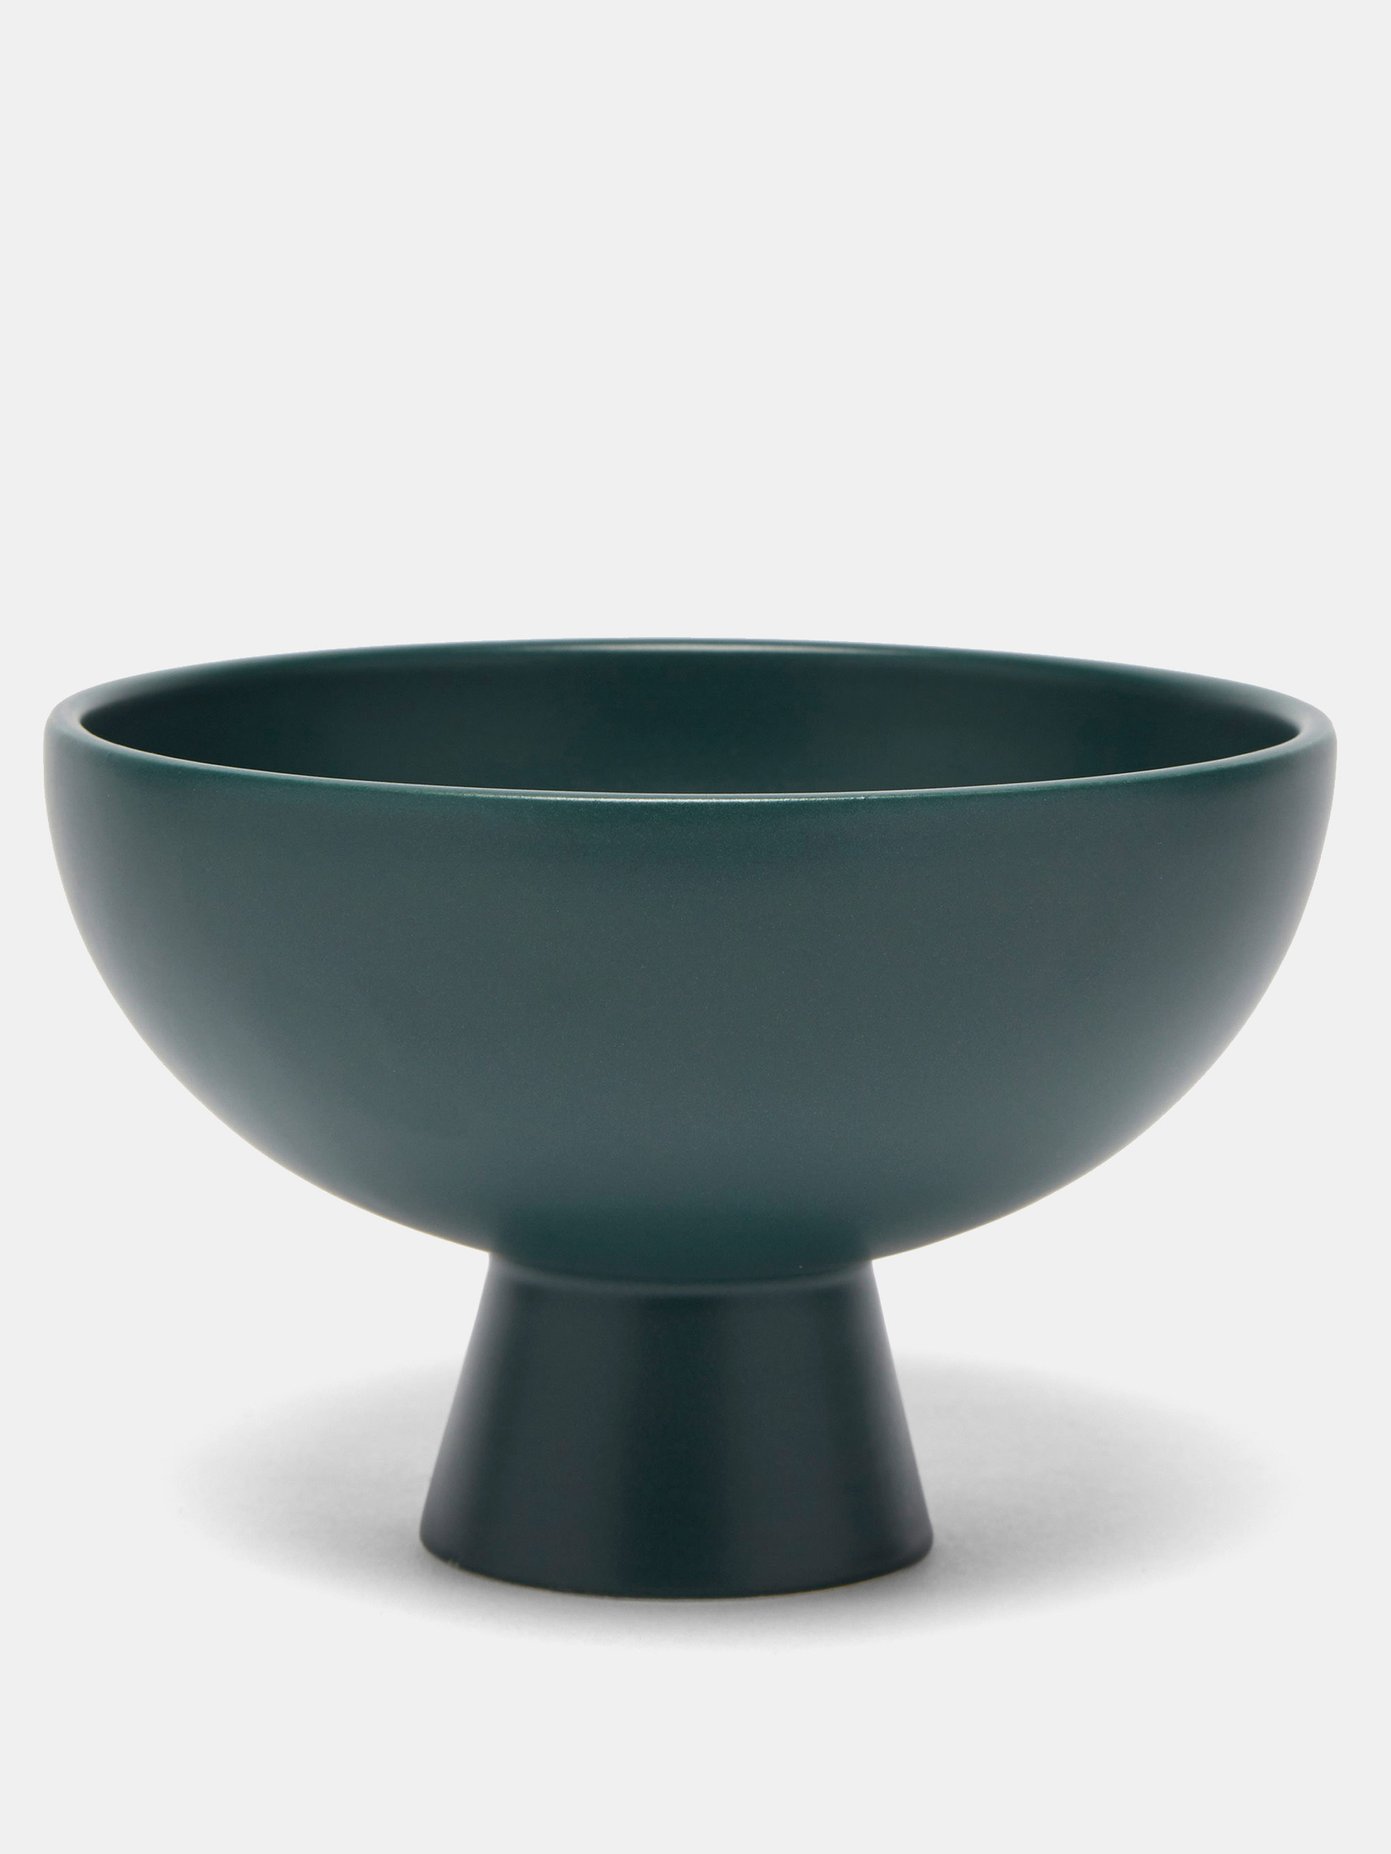 라위 세라믹 볼 (덴마크 코펜하겐 미니멀리즘 브랜드, 포르투칼에서 수제작!)  Raawii Green Stroem large ceramic bowl